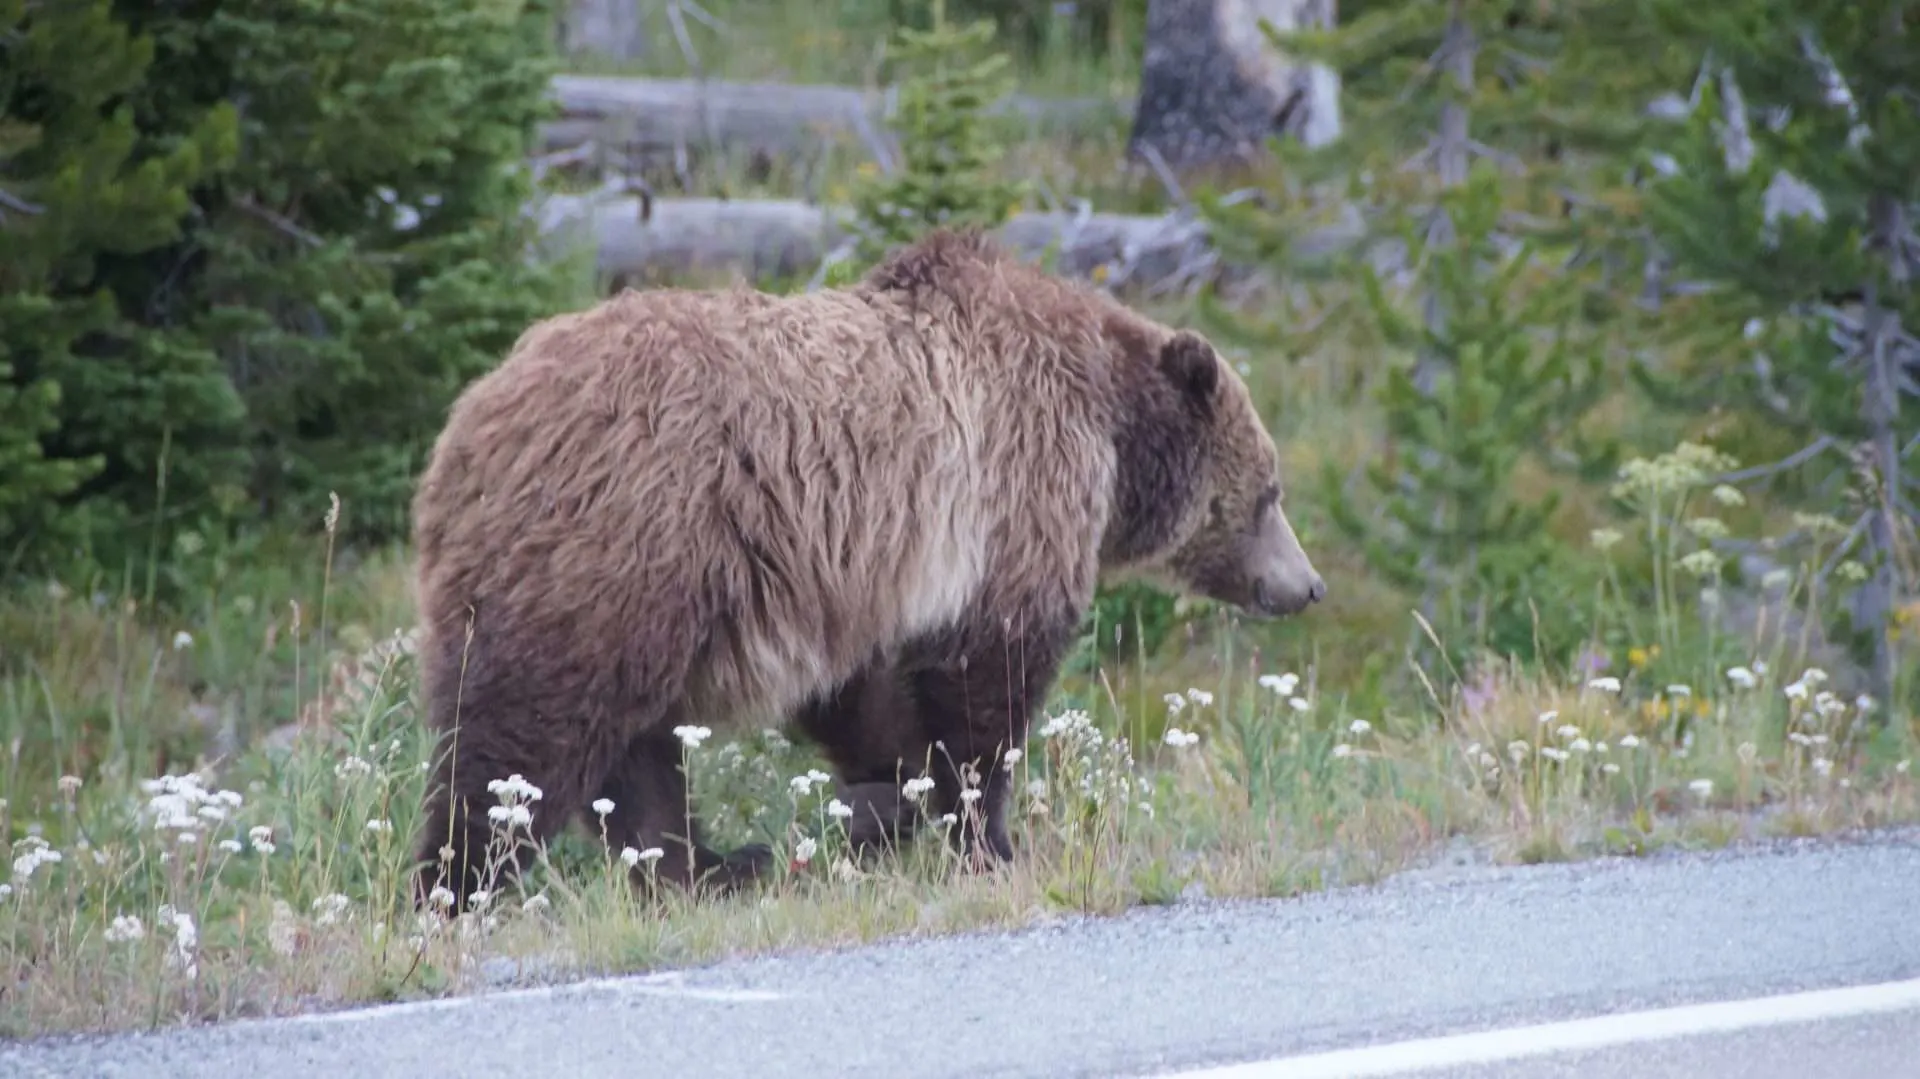 Wild bear walking along the road.